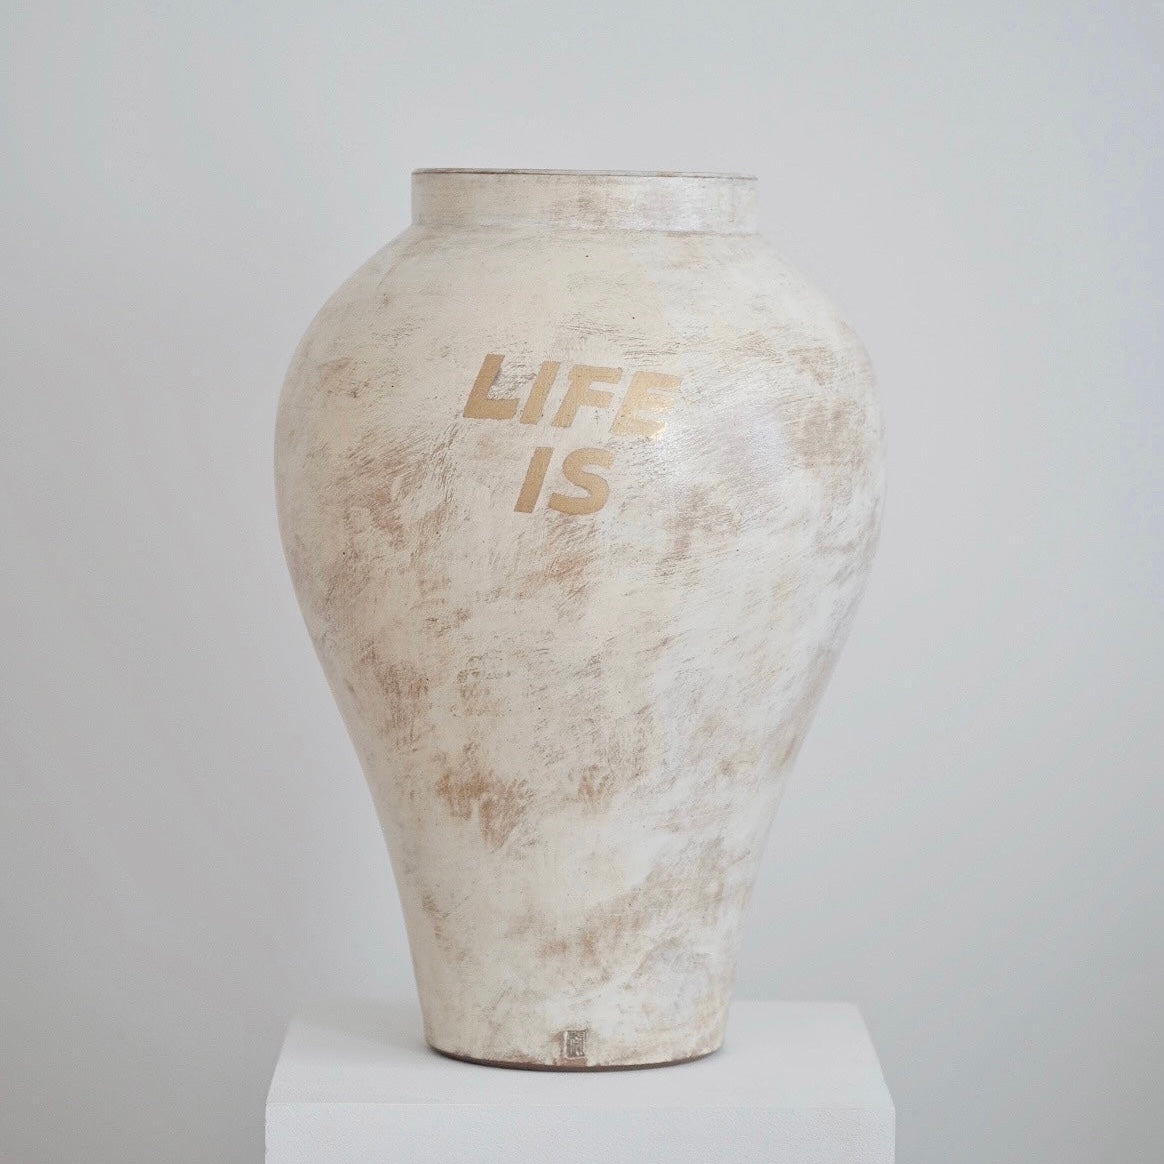 Buncheong Life Is Vase